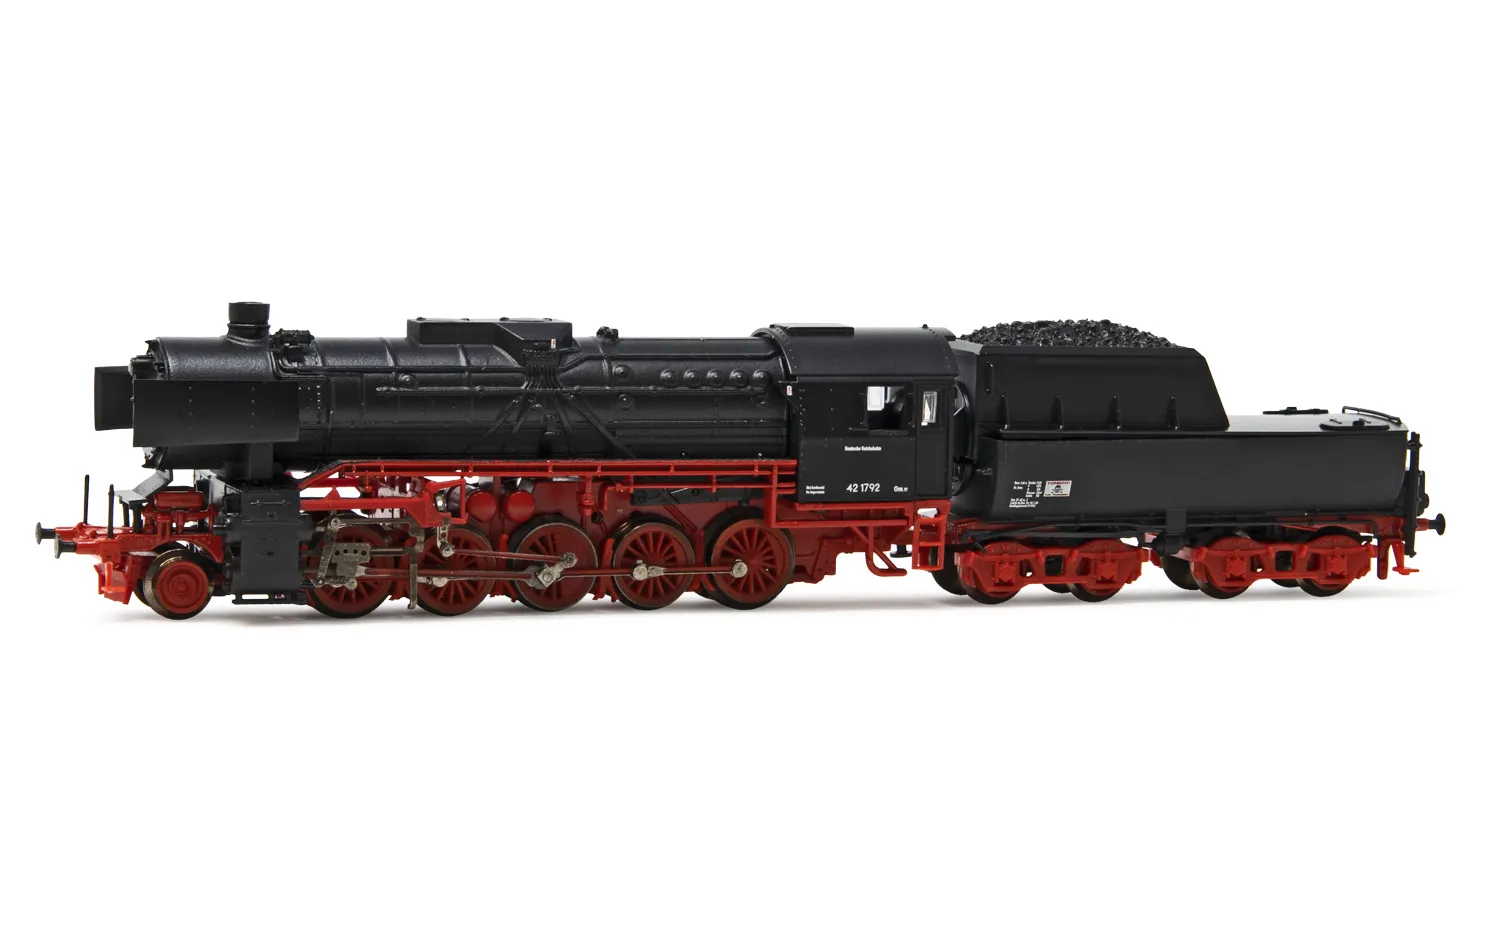 DR, Dampflokomotive 42 1792 in schwarz/roter Lackierung, mit drittem Spitzenlicht, Ep. III